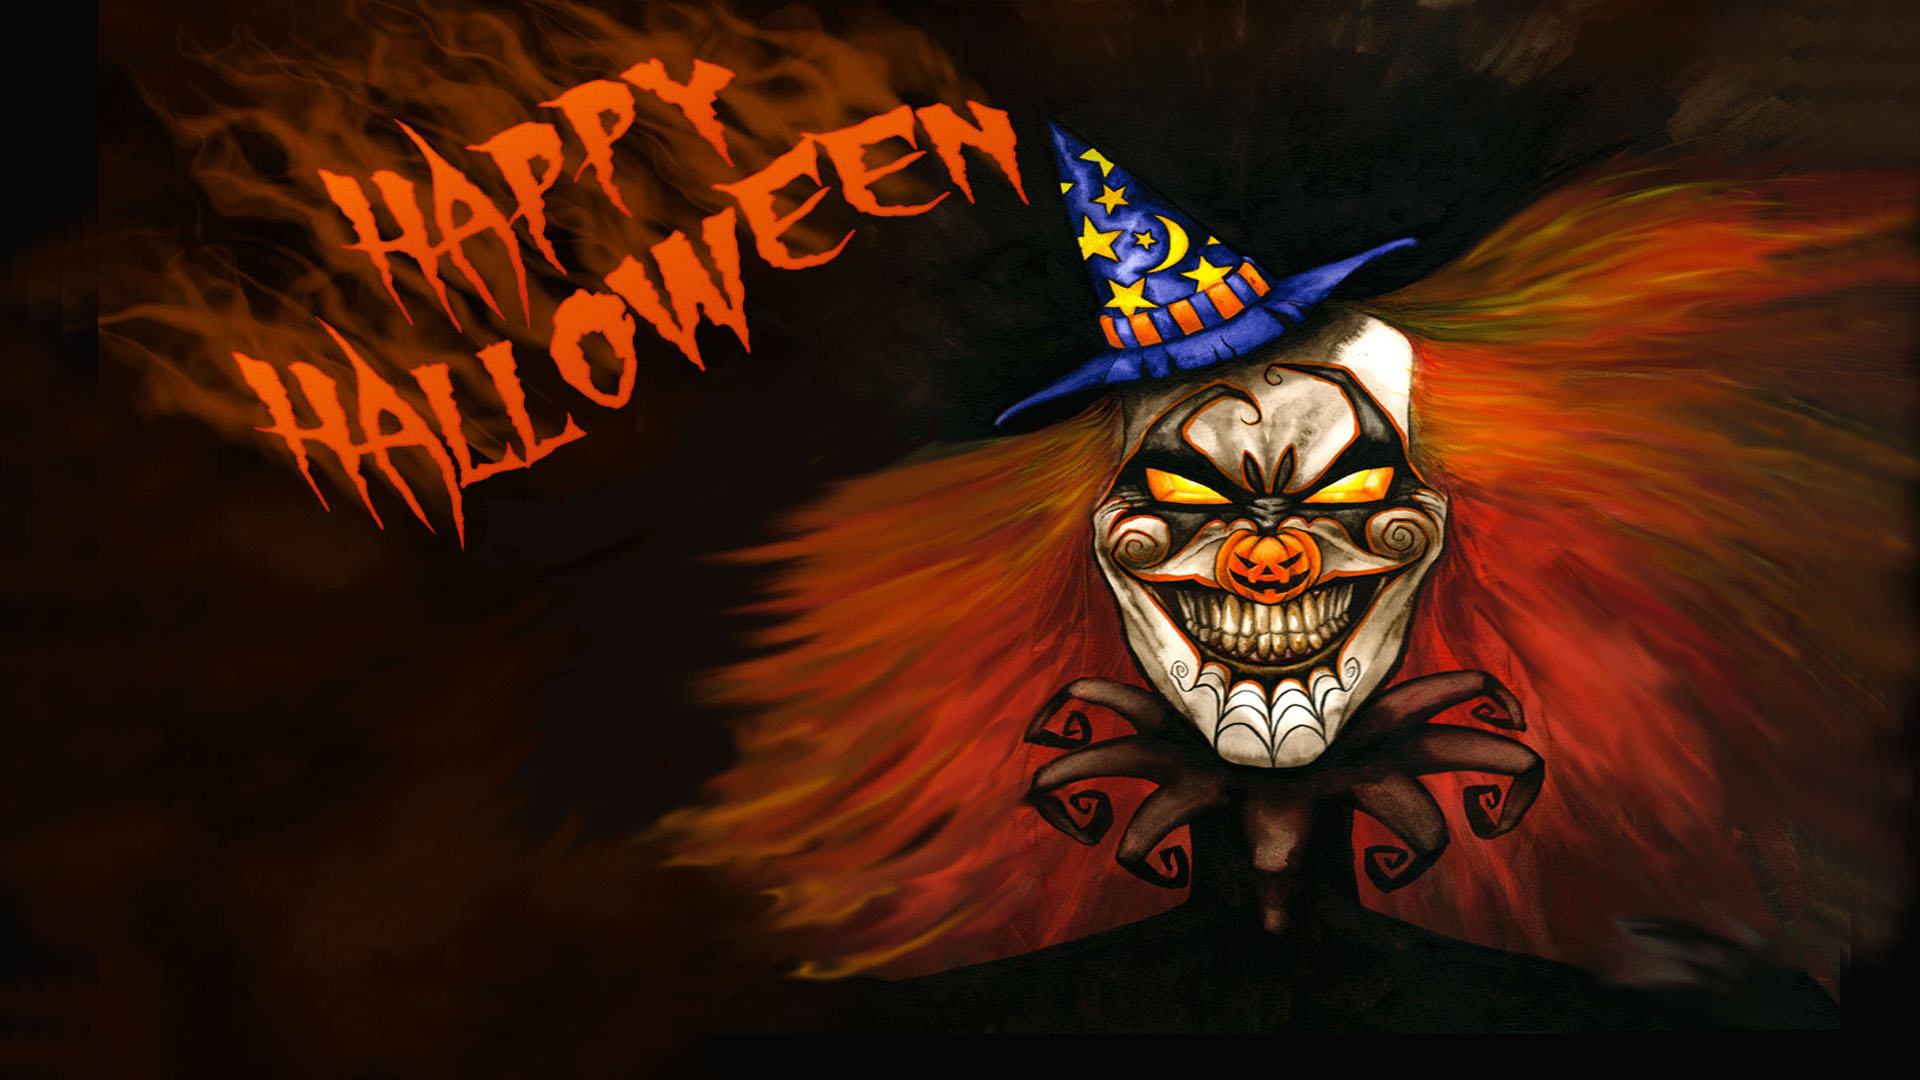 Happy Halloween HD Wallpaper - KoLPaPer - Awesome Free HD Wallpapers